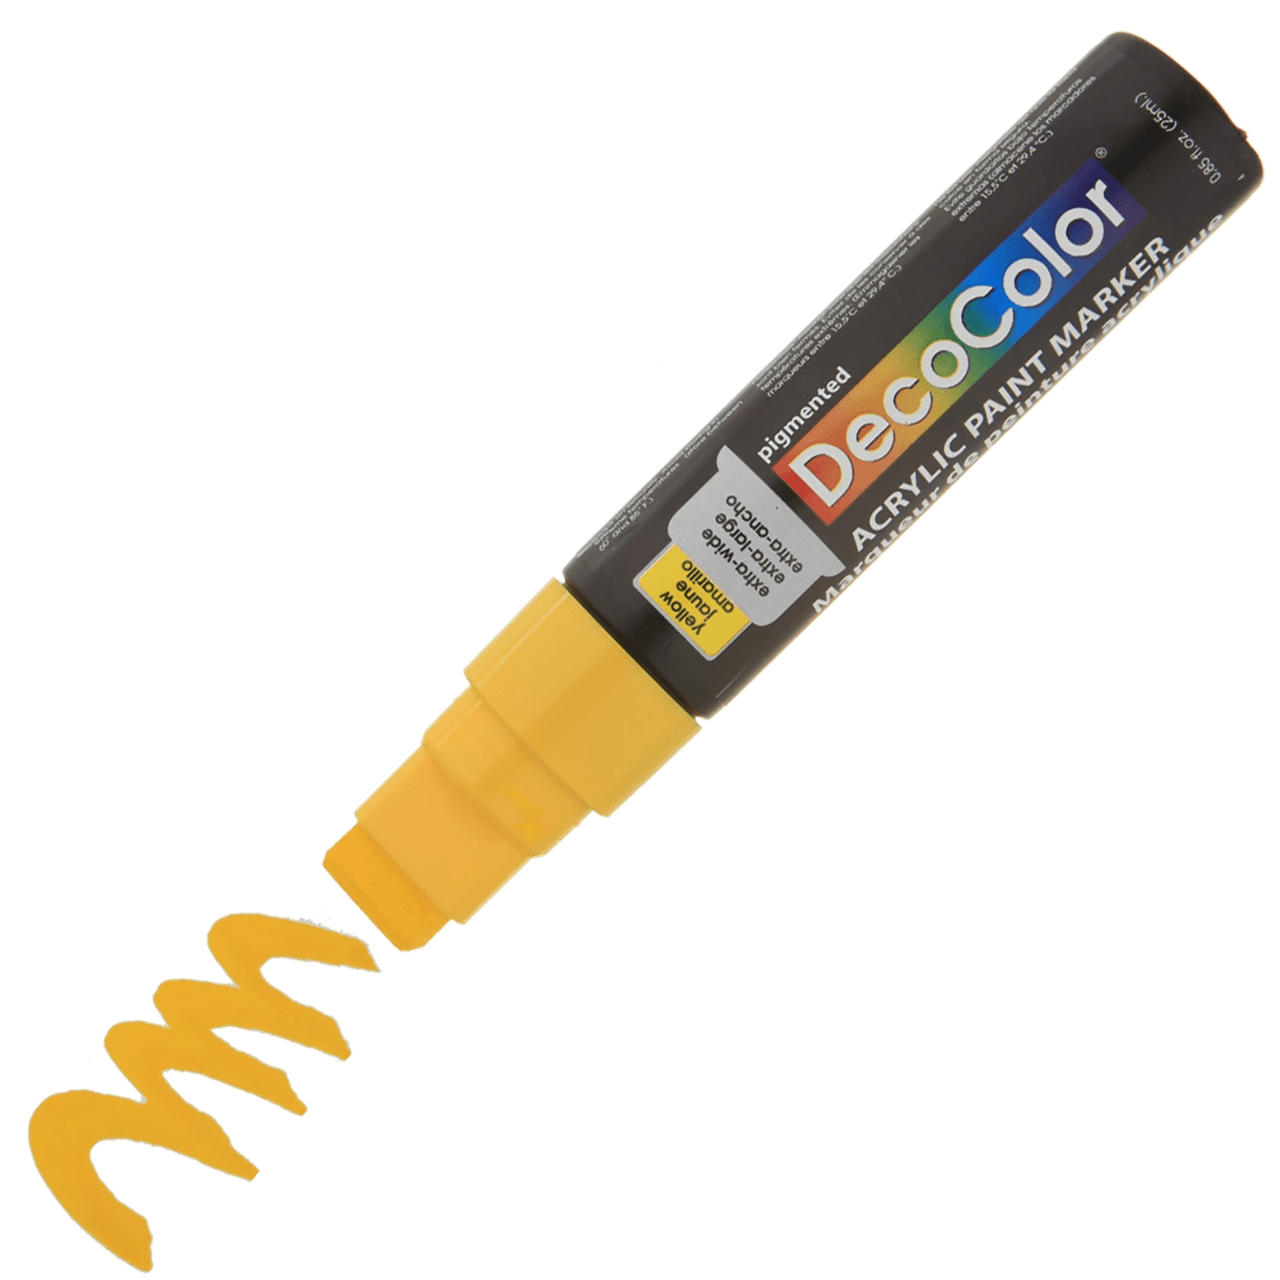 DecoColor Acrylic Jumbo Marker